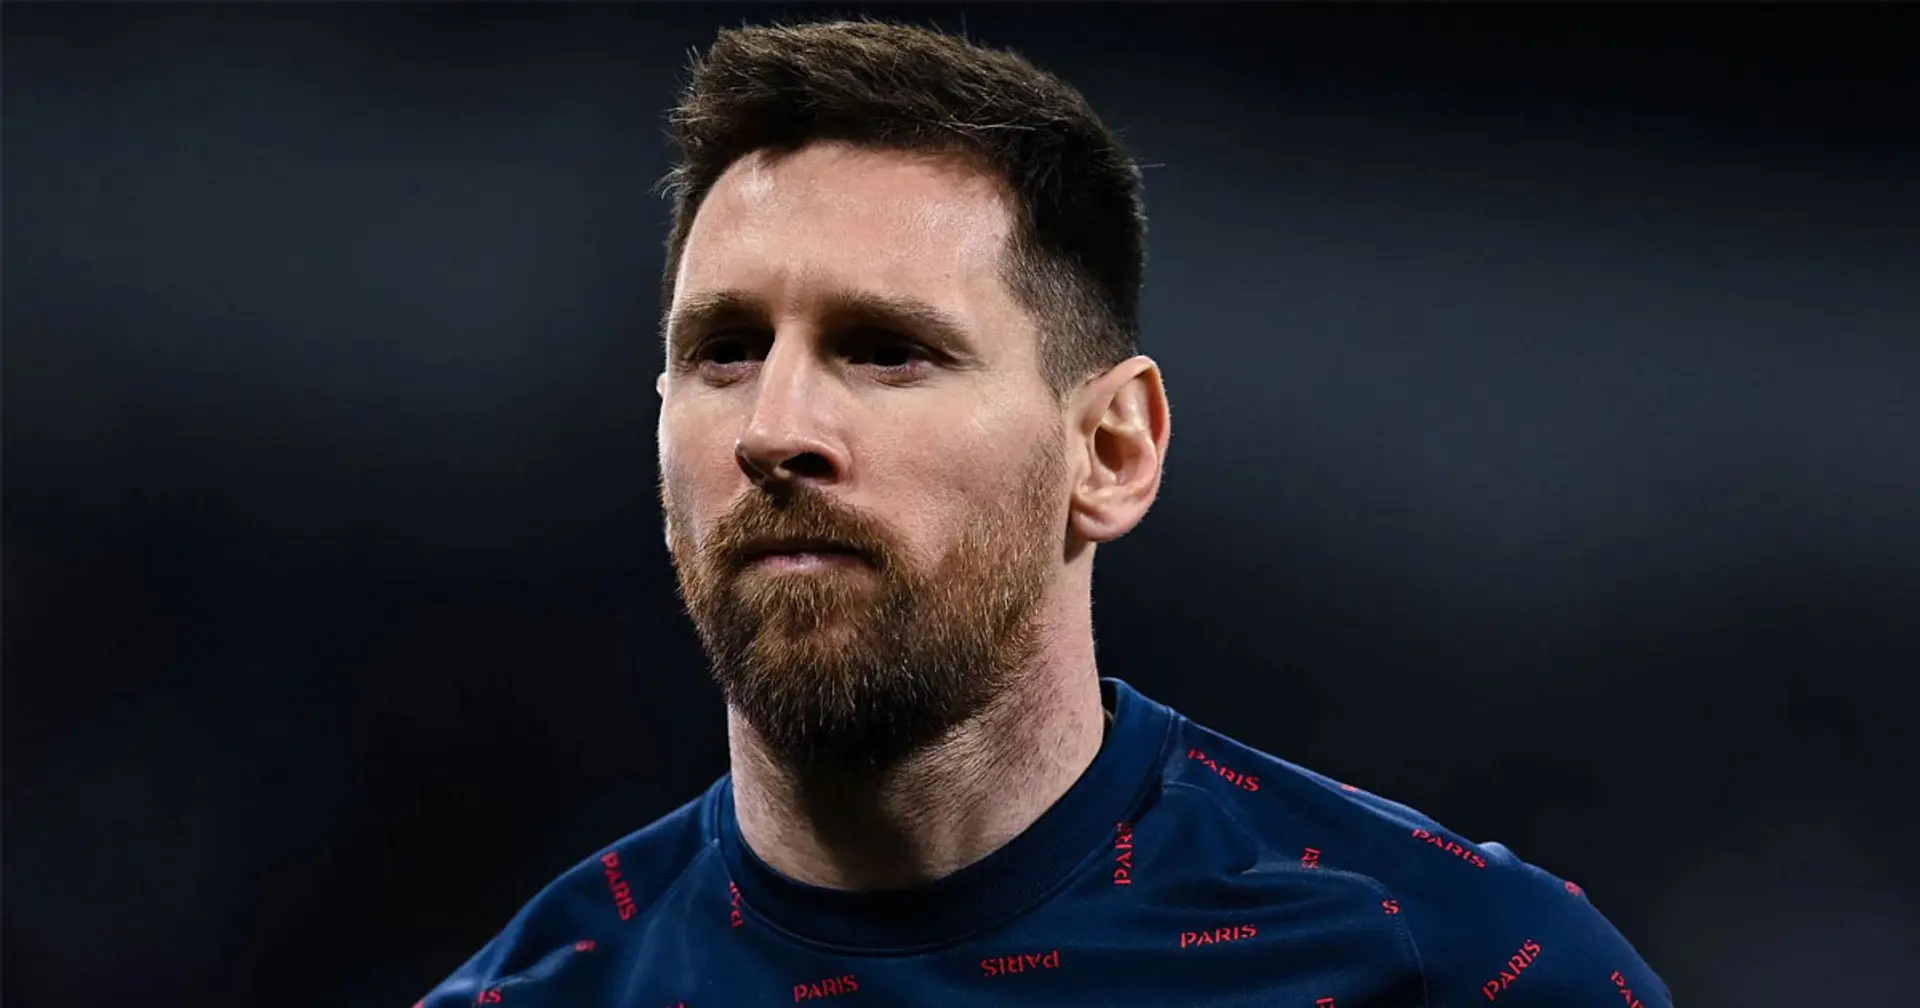 Messi a "le pire taux de conversion des grosses occasions" dans les 5 meilleures ligues européennes en 2021/22